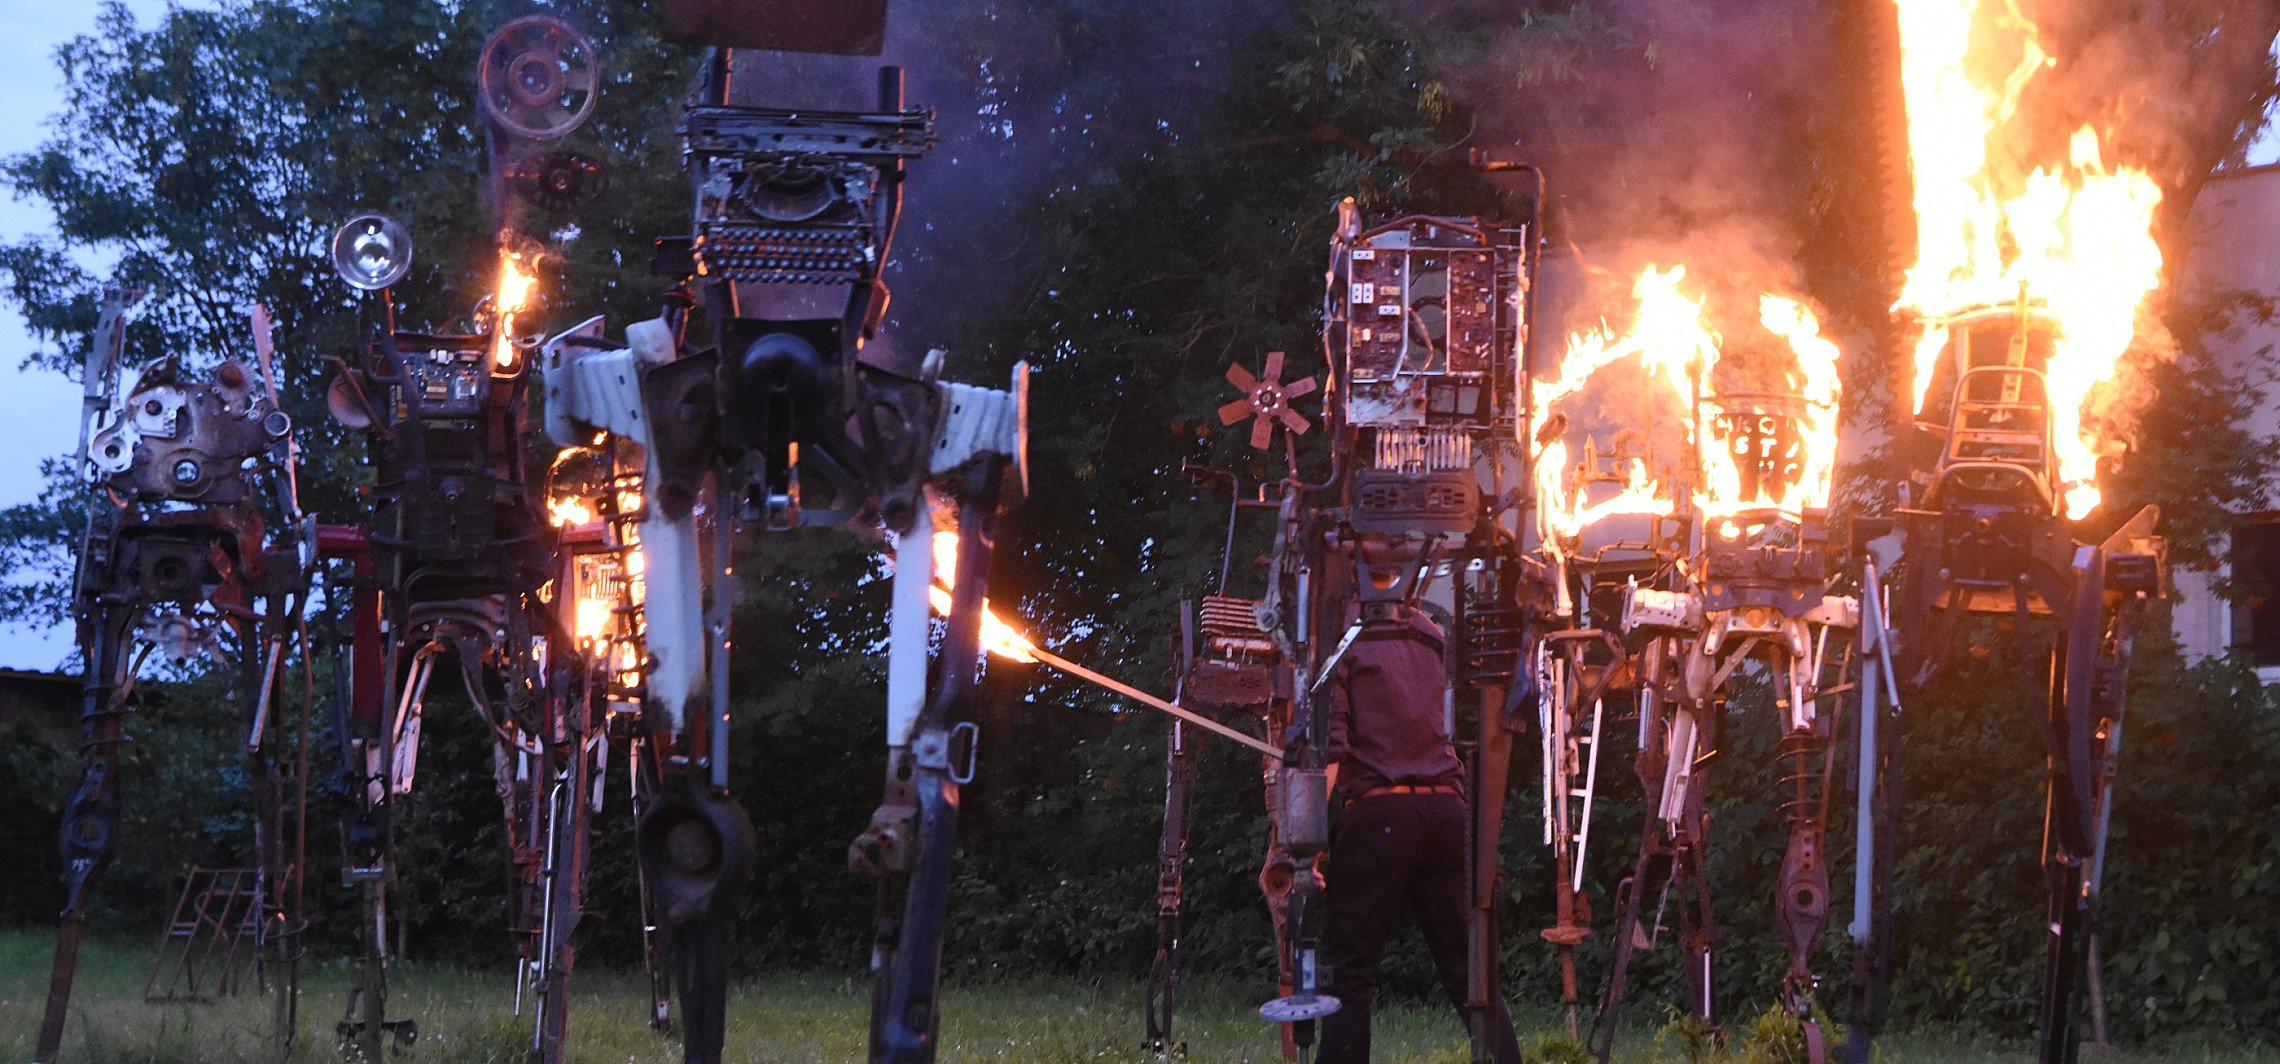 Inowrocław - Na łące przy muzeum podpalono rzeźby